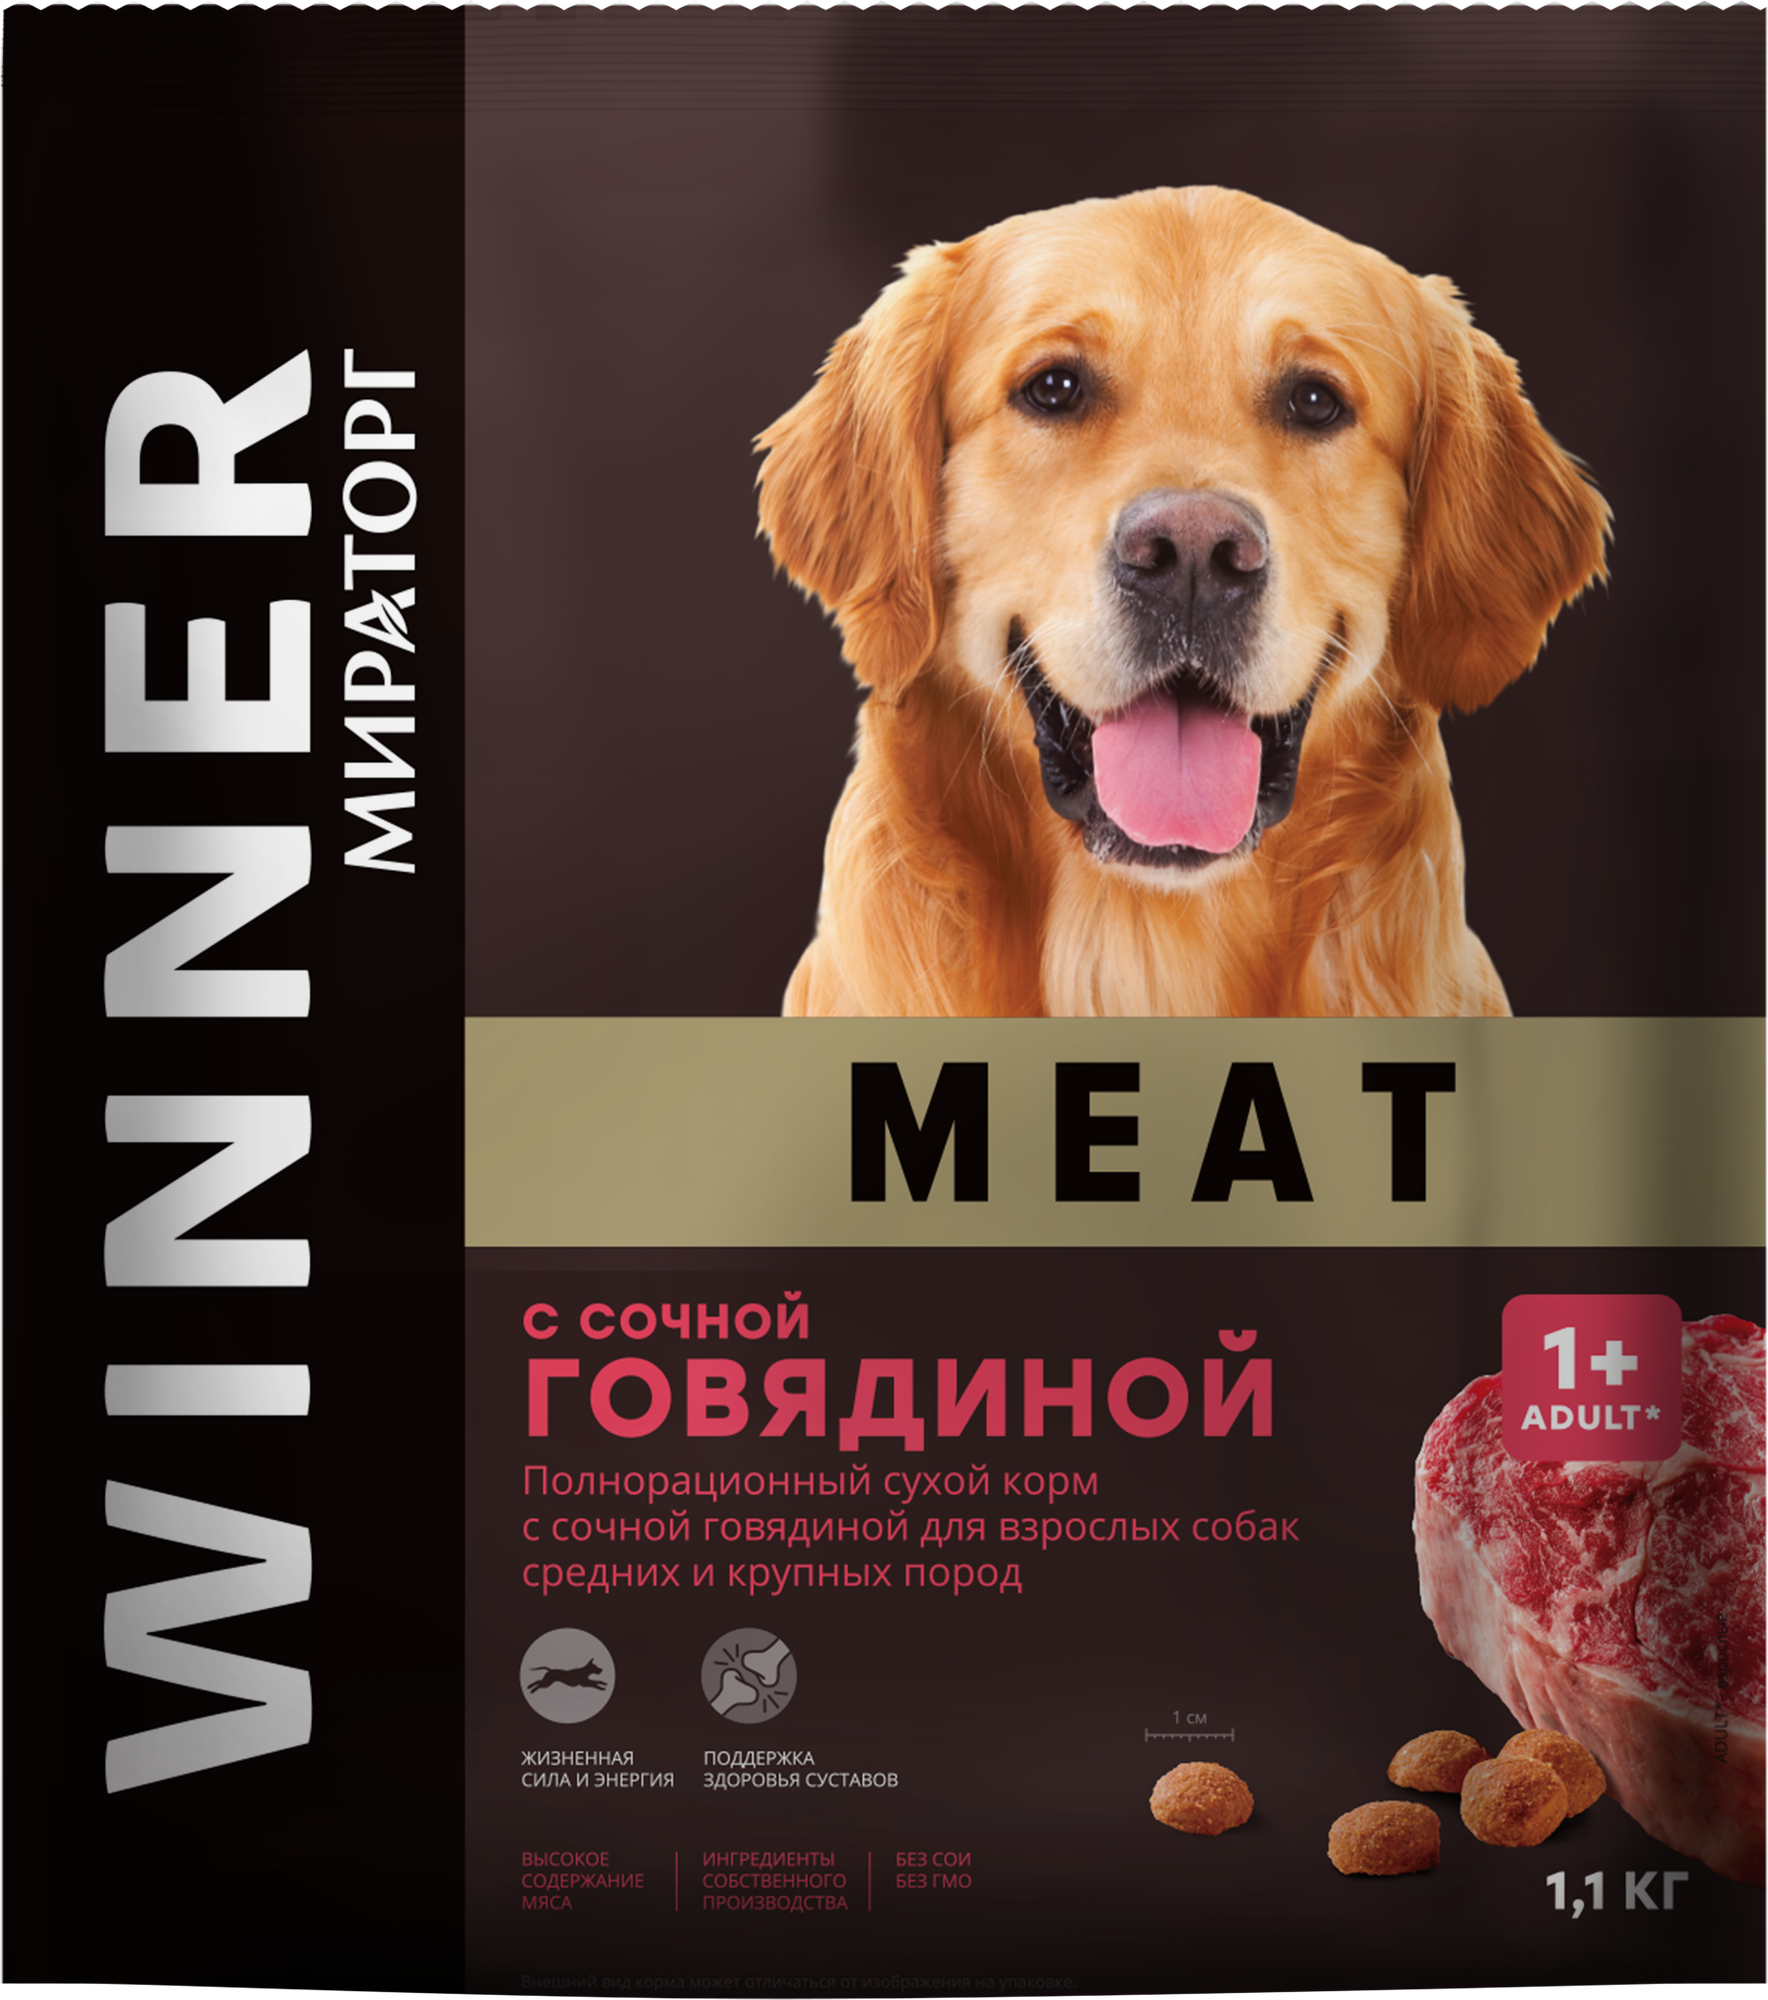 Сухой корм Мираторг WINNER MEAT с сочной говядиной для взрослых собак средних и крупных пород 1,1 кг